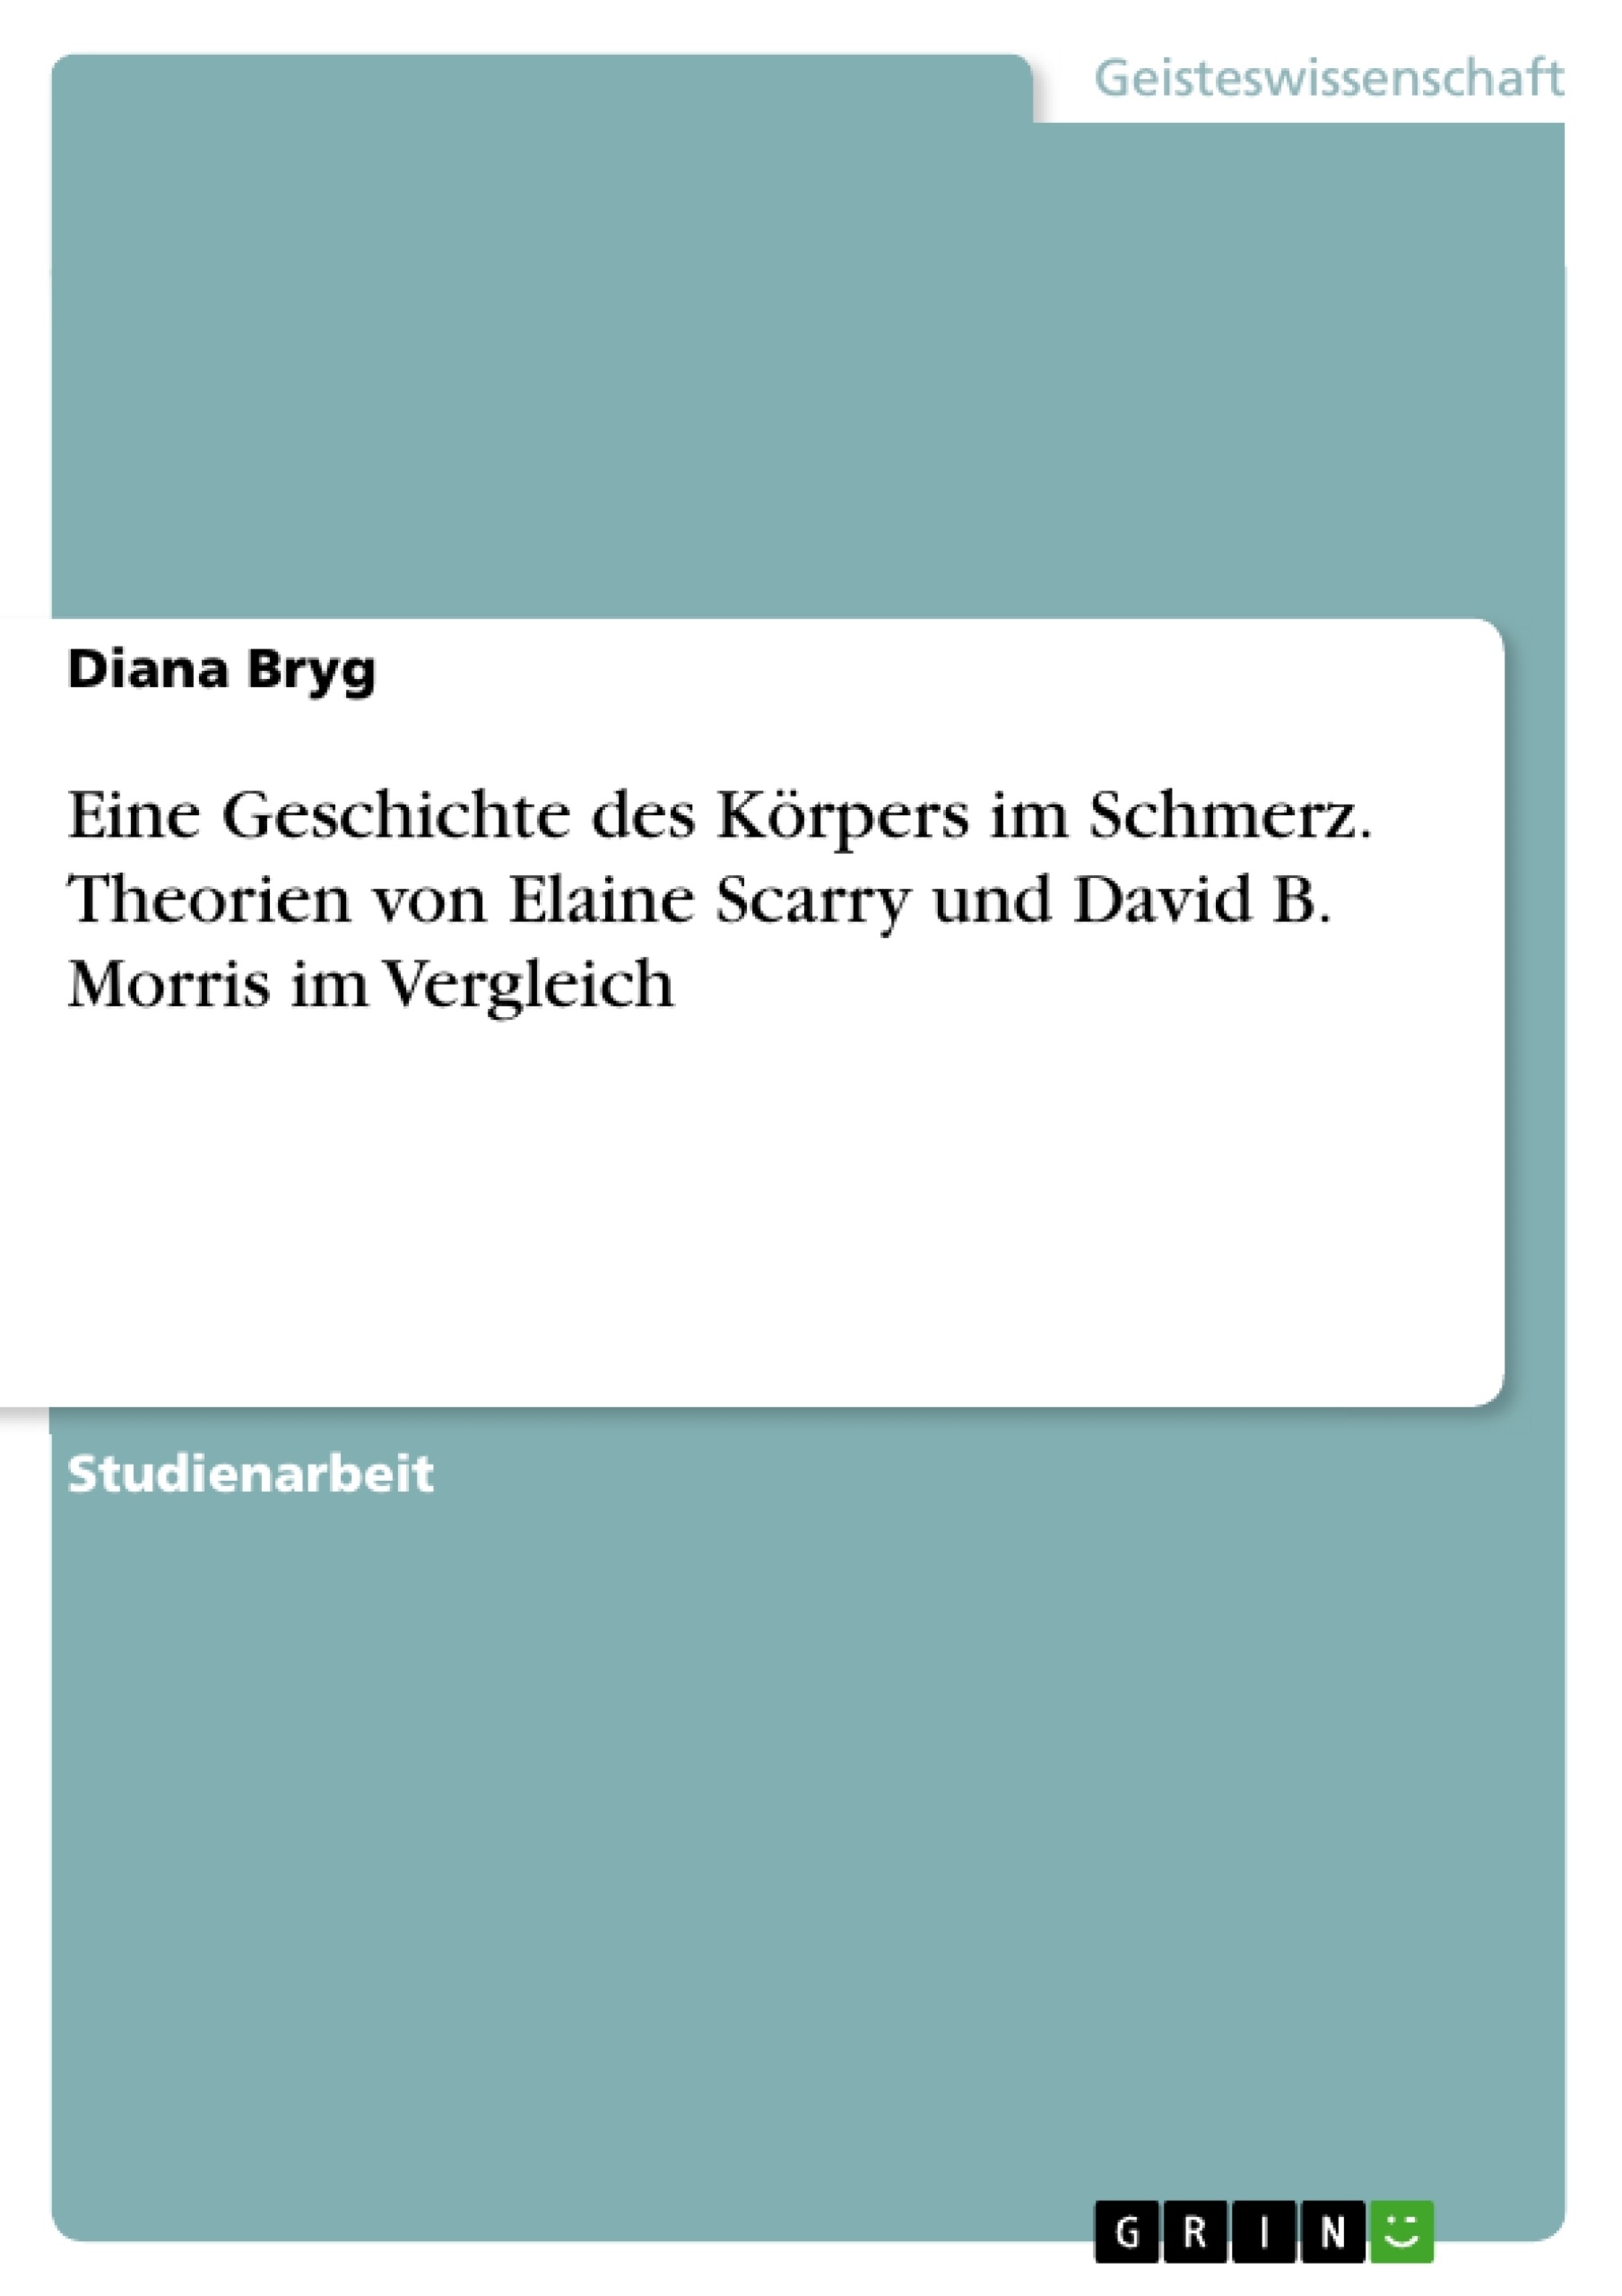 Title: Eine Geschichte des Körpers im Schmerz. Theorien von Elaine Scarry und David B. Morris im Vergleich